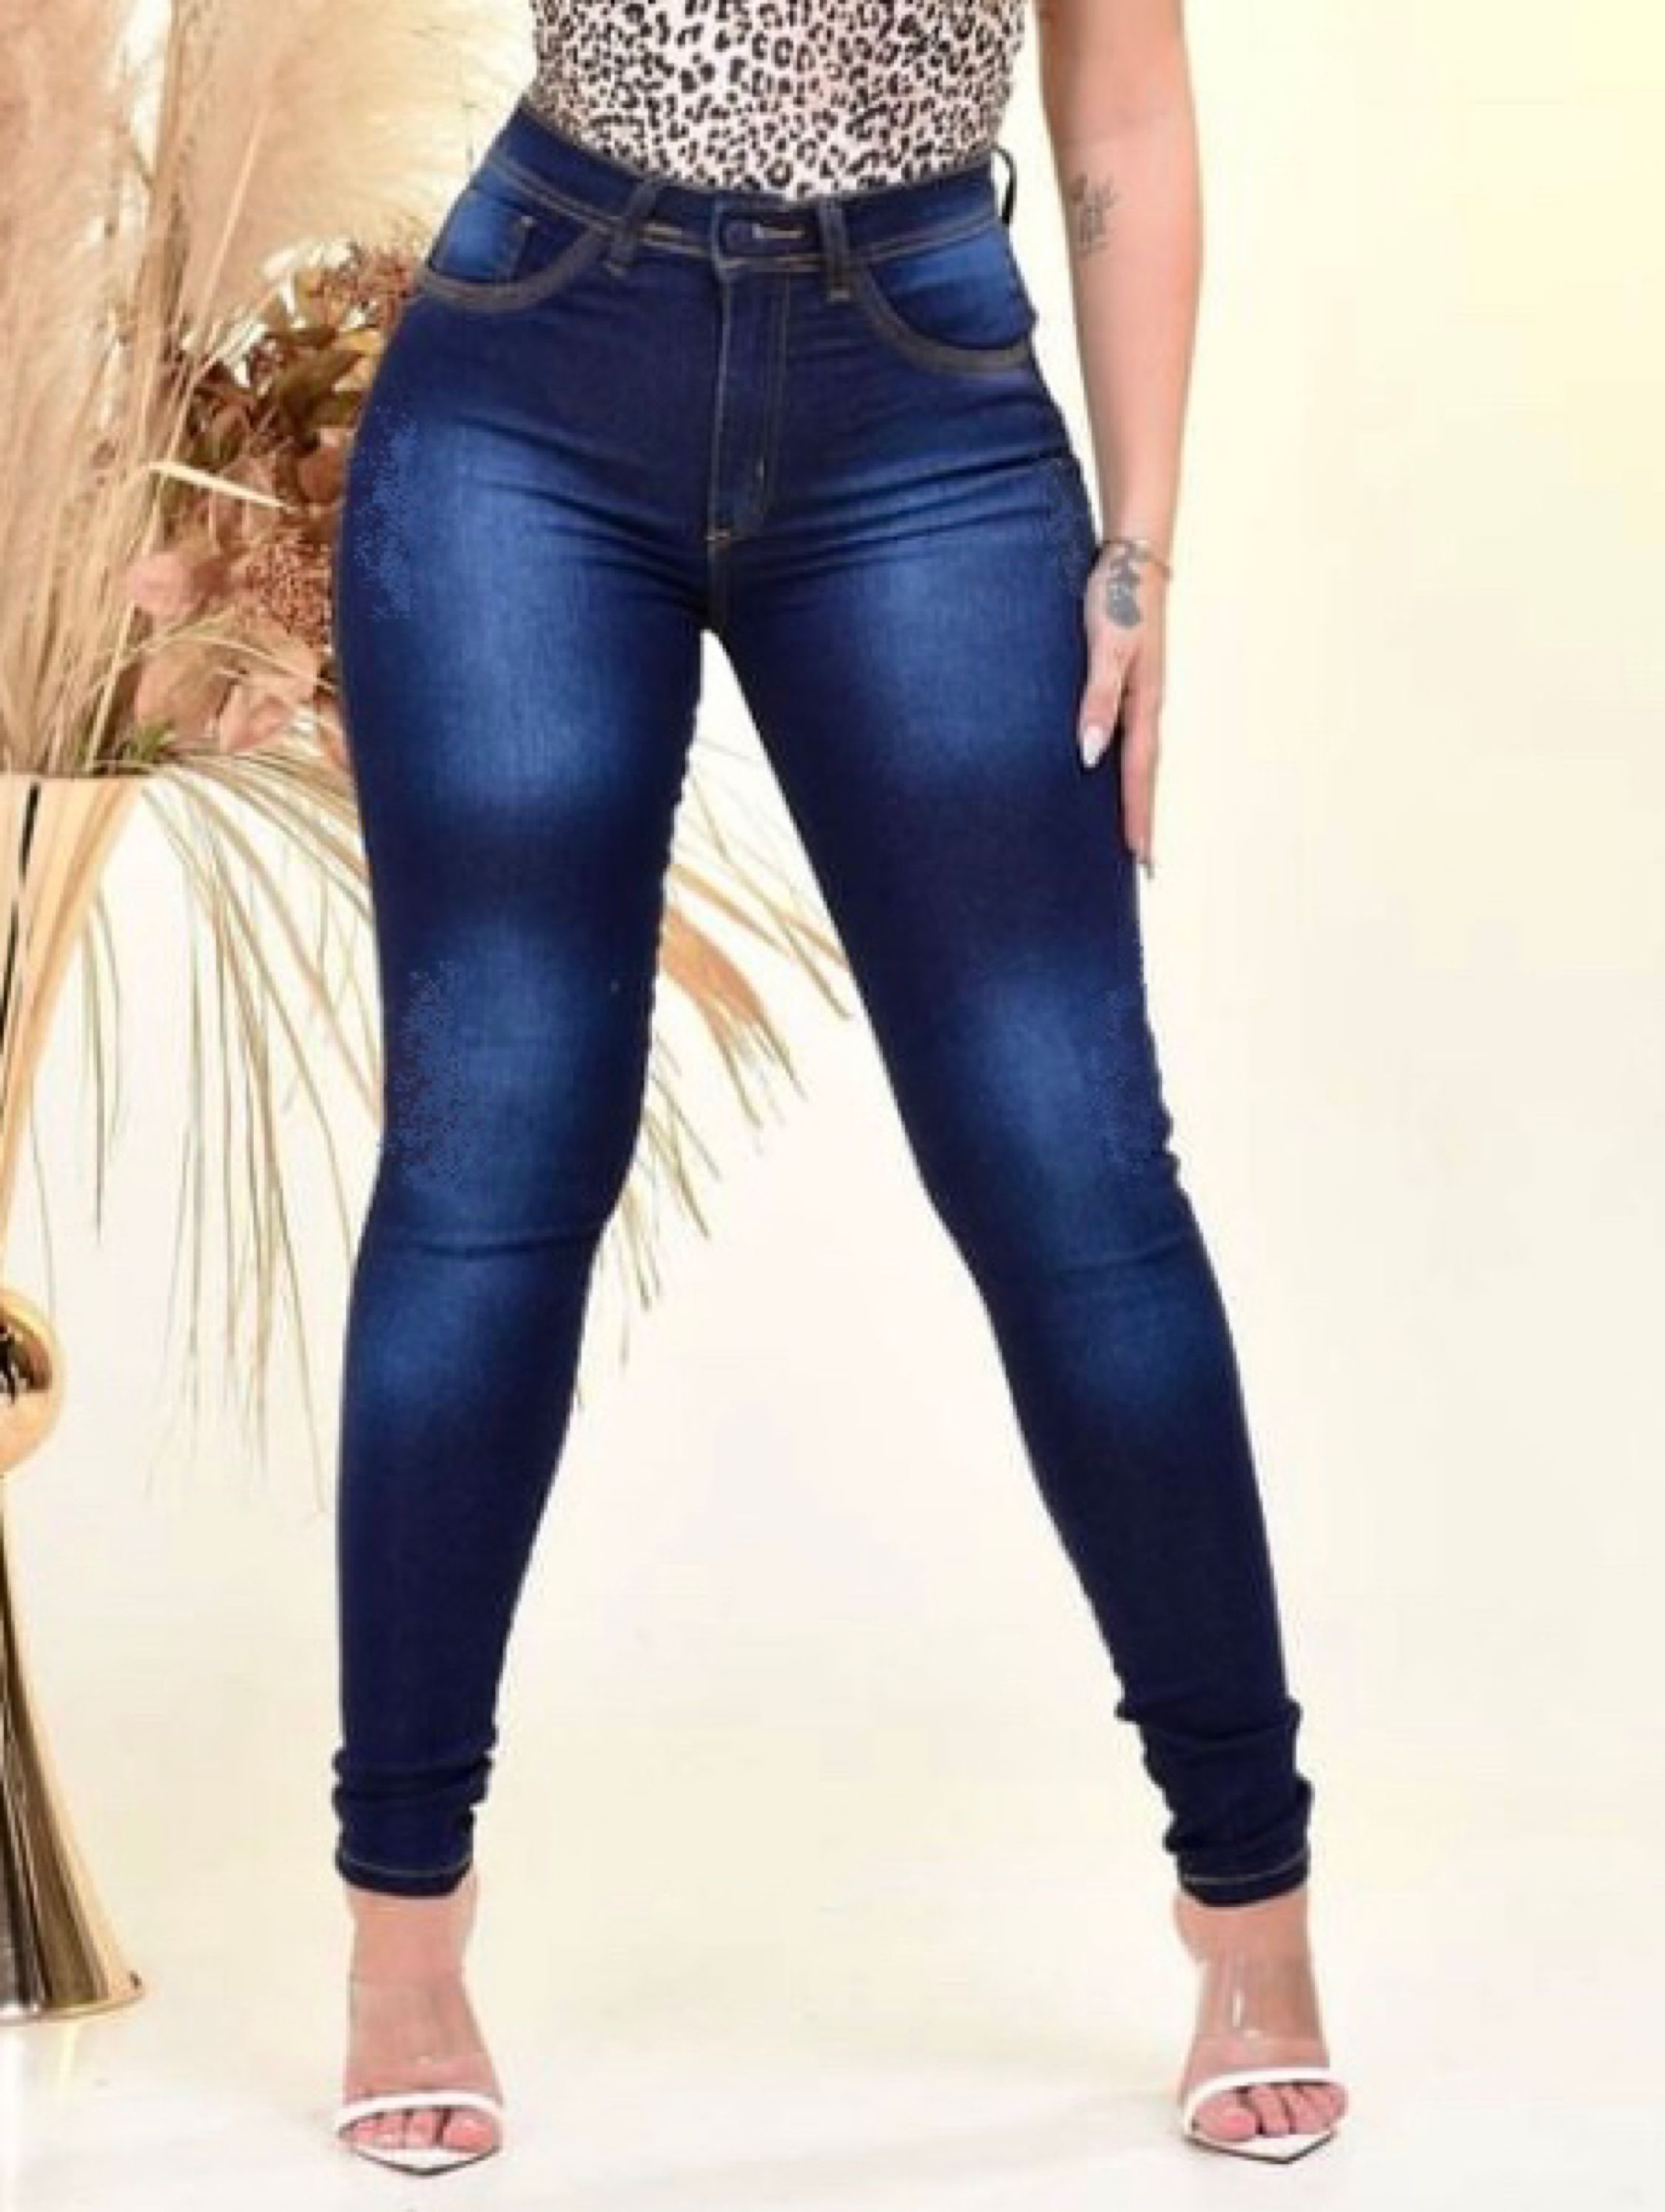 Calça Jeans Preta Feminina Skinny Tradicional - Atacado na Rua 44.